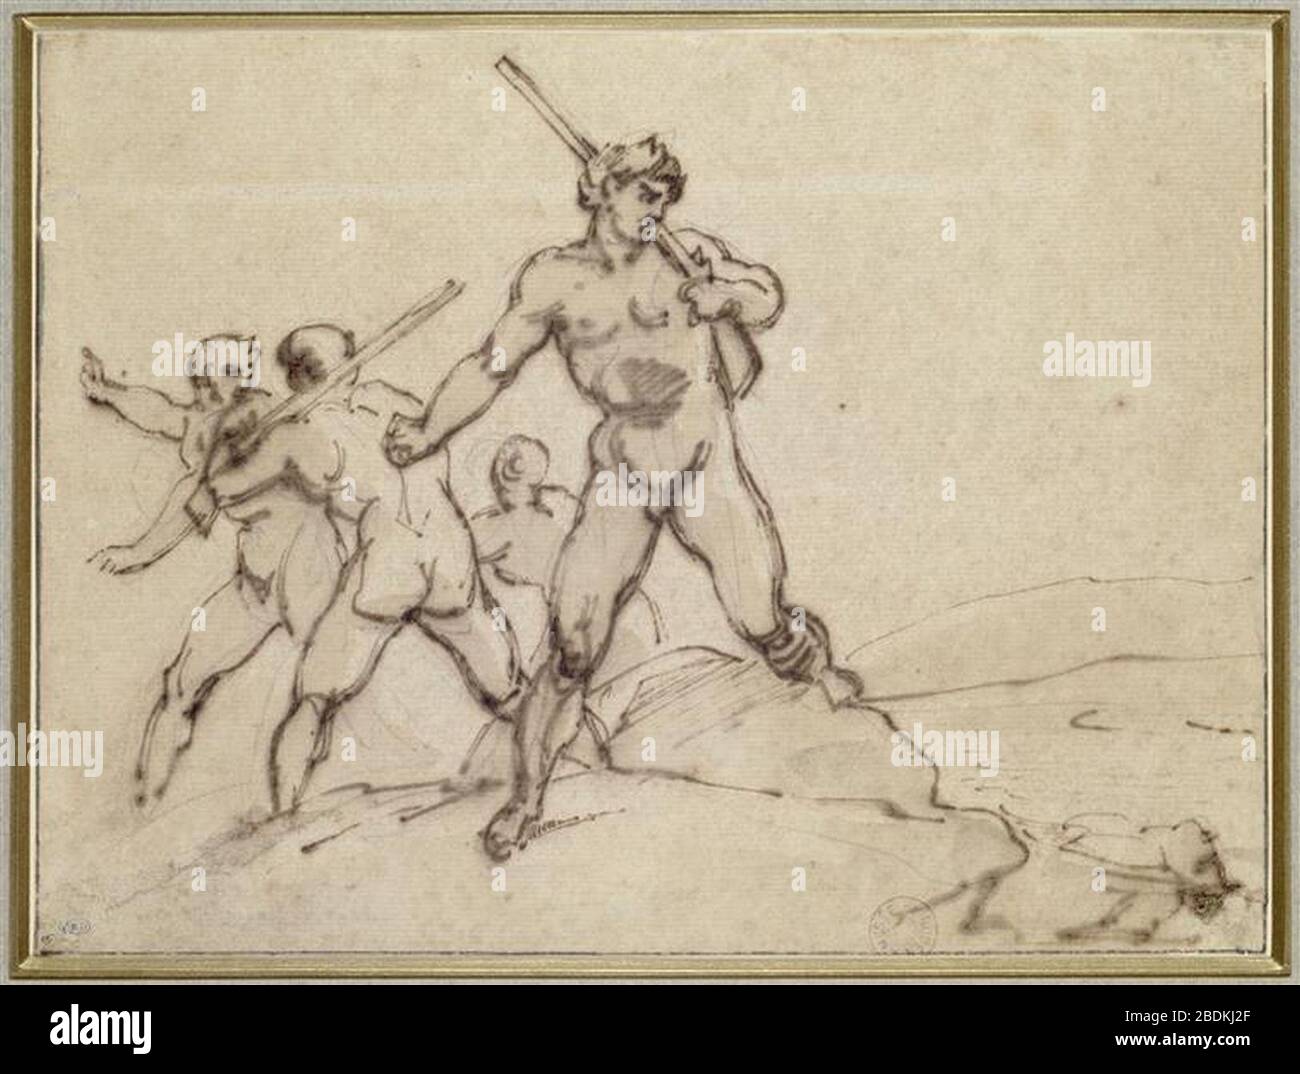 Géricault - Les assassins de Fualdes s'enfuyant INV880-16-11. Stock Photo